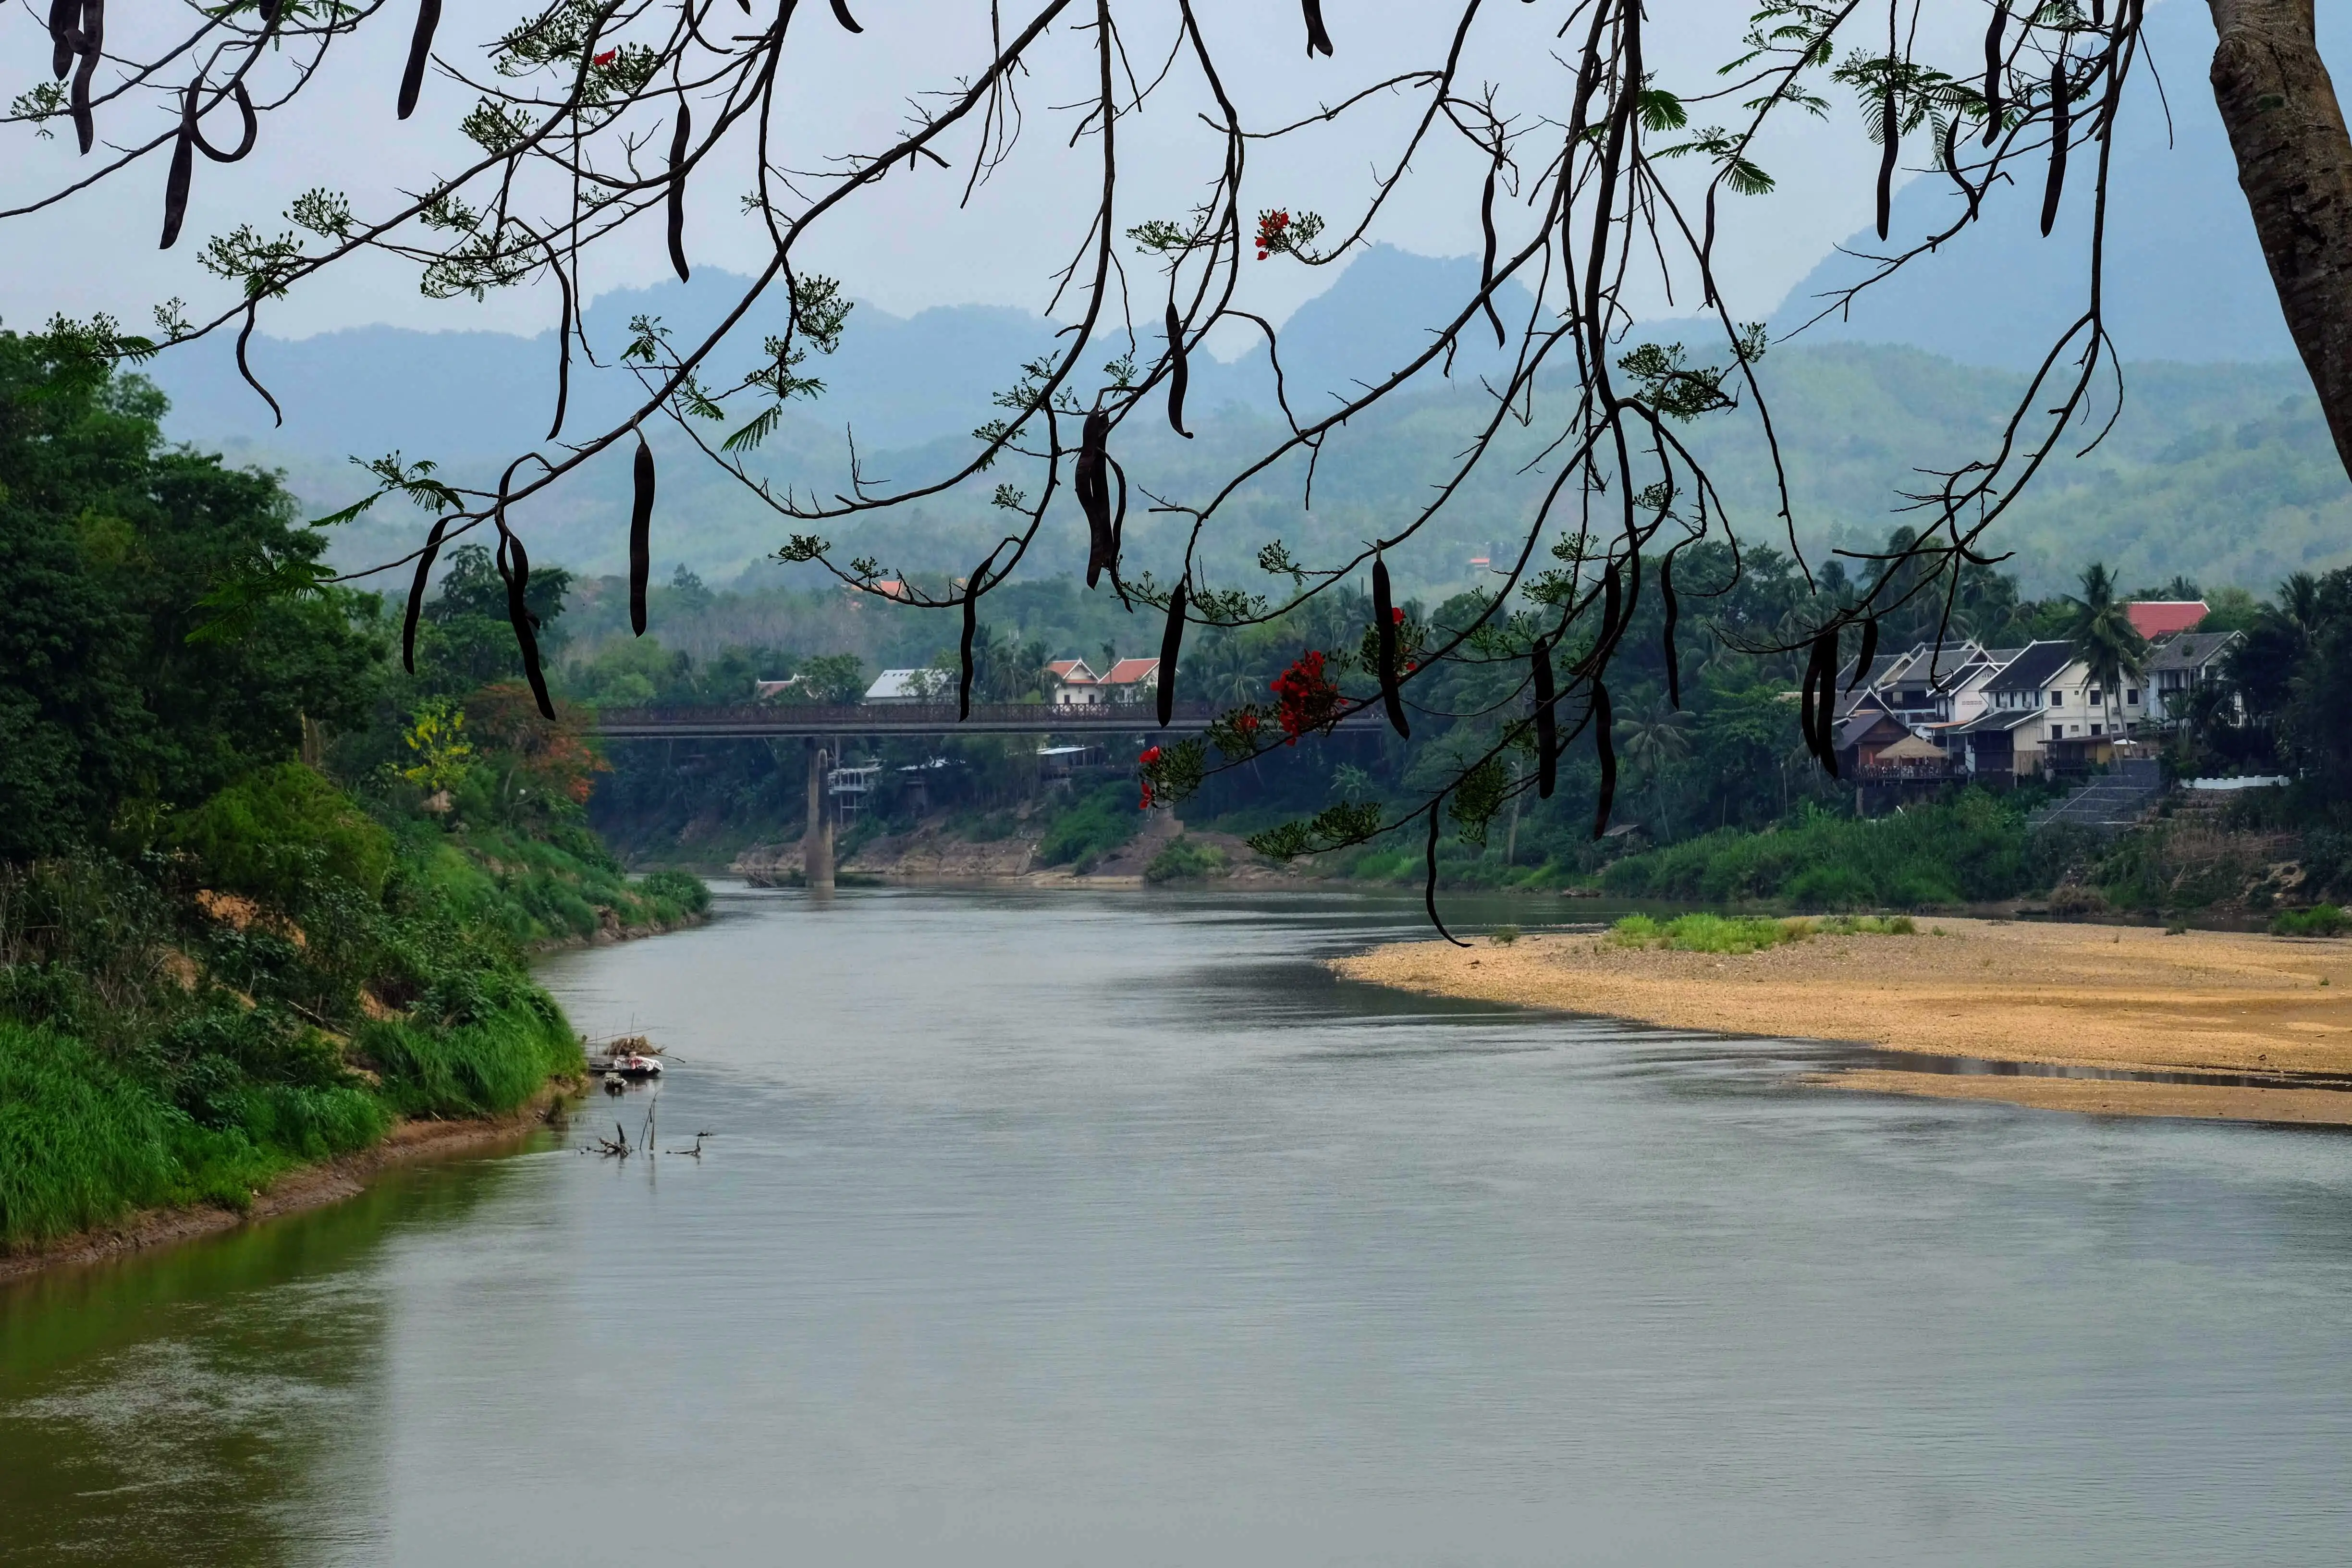 River in Luang Prabang, Laos